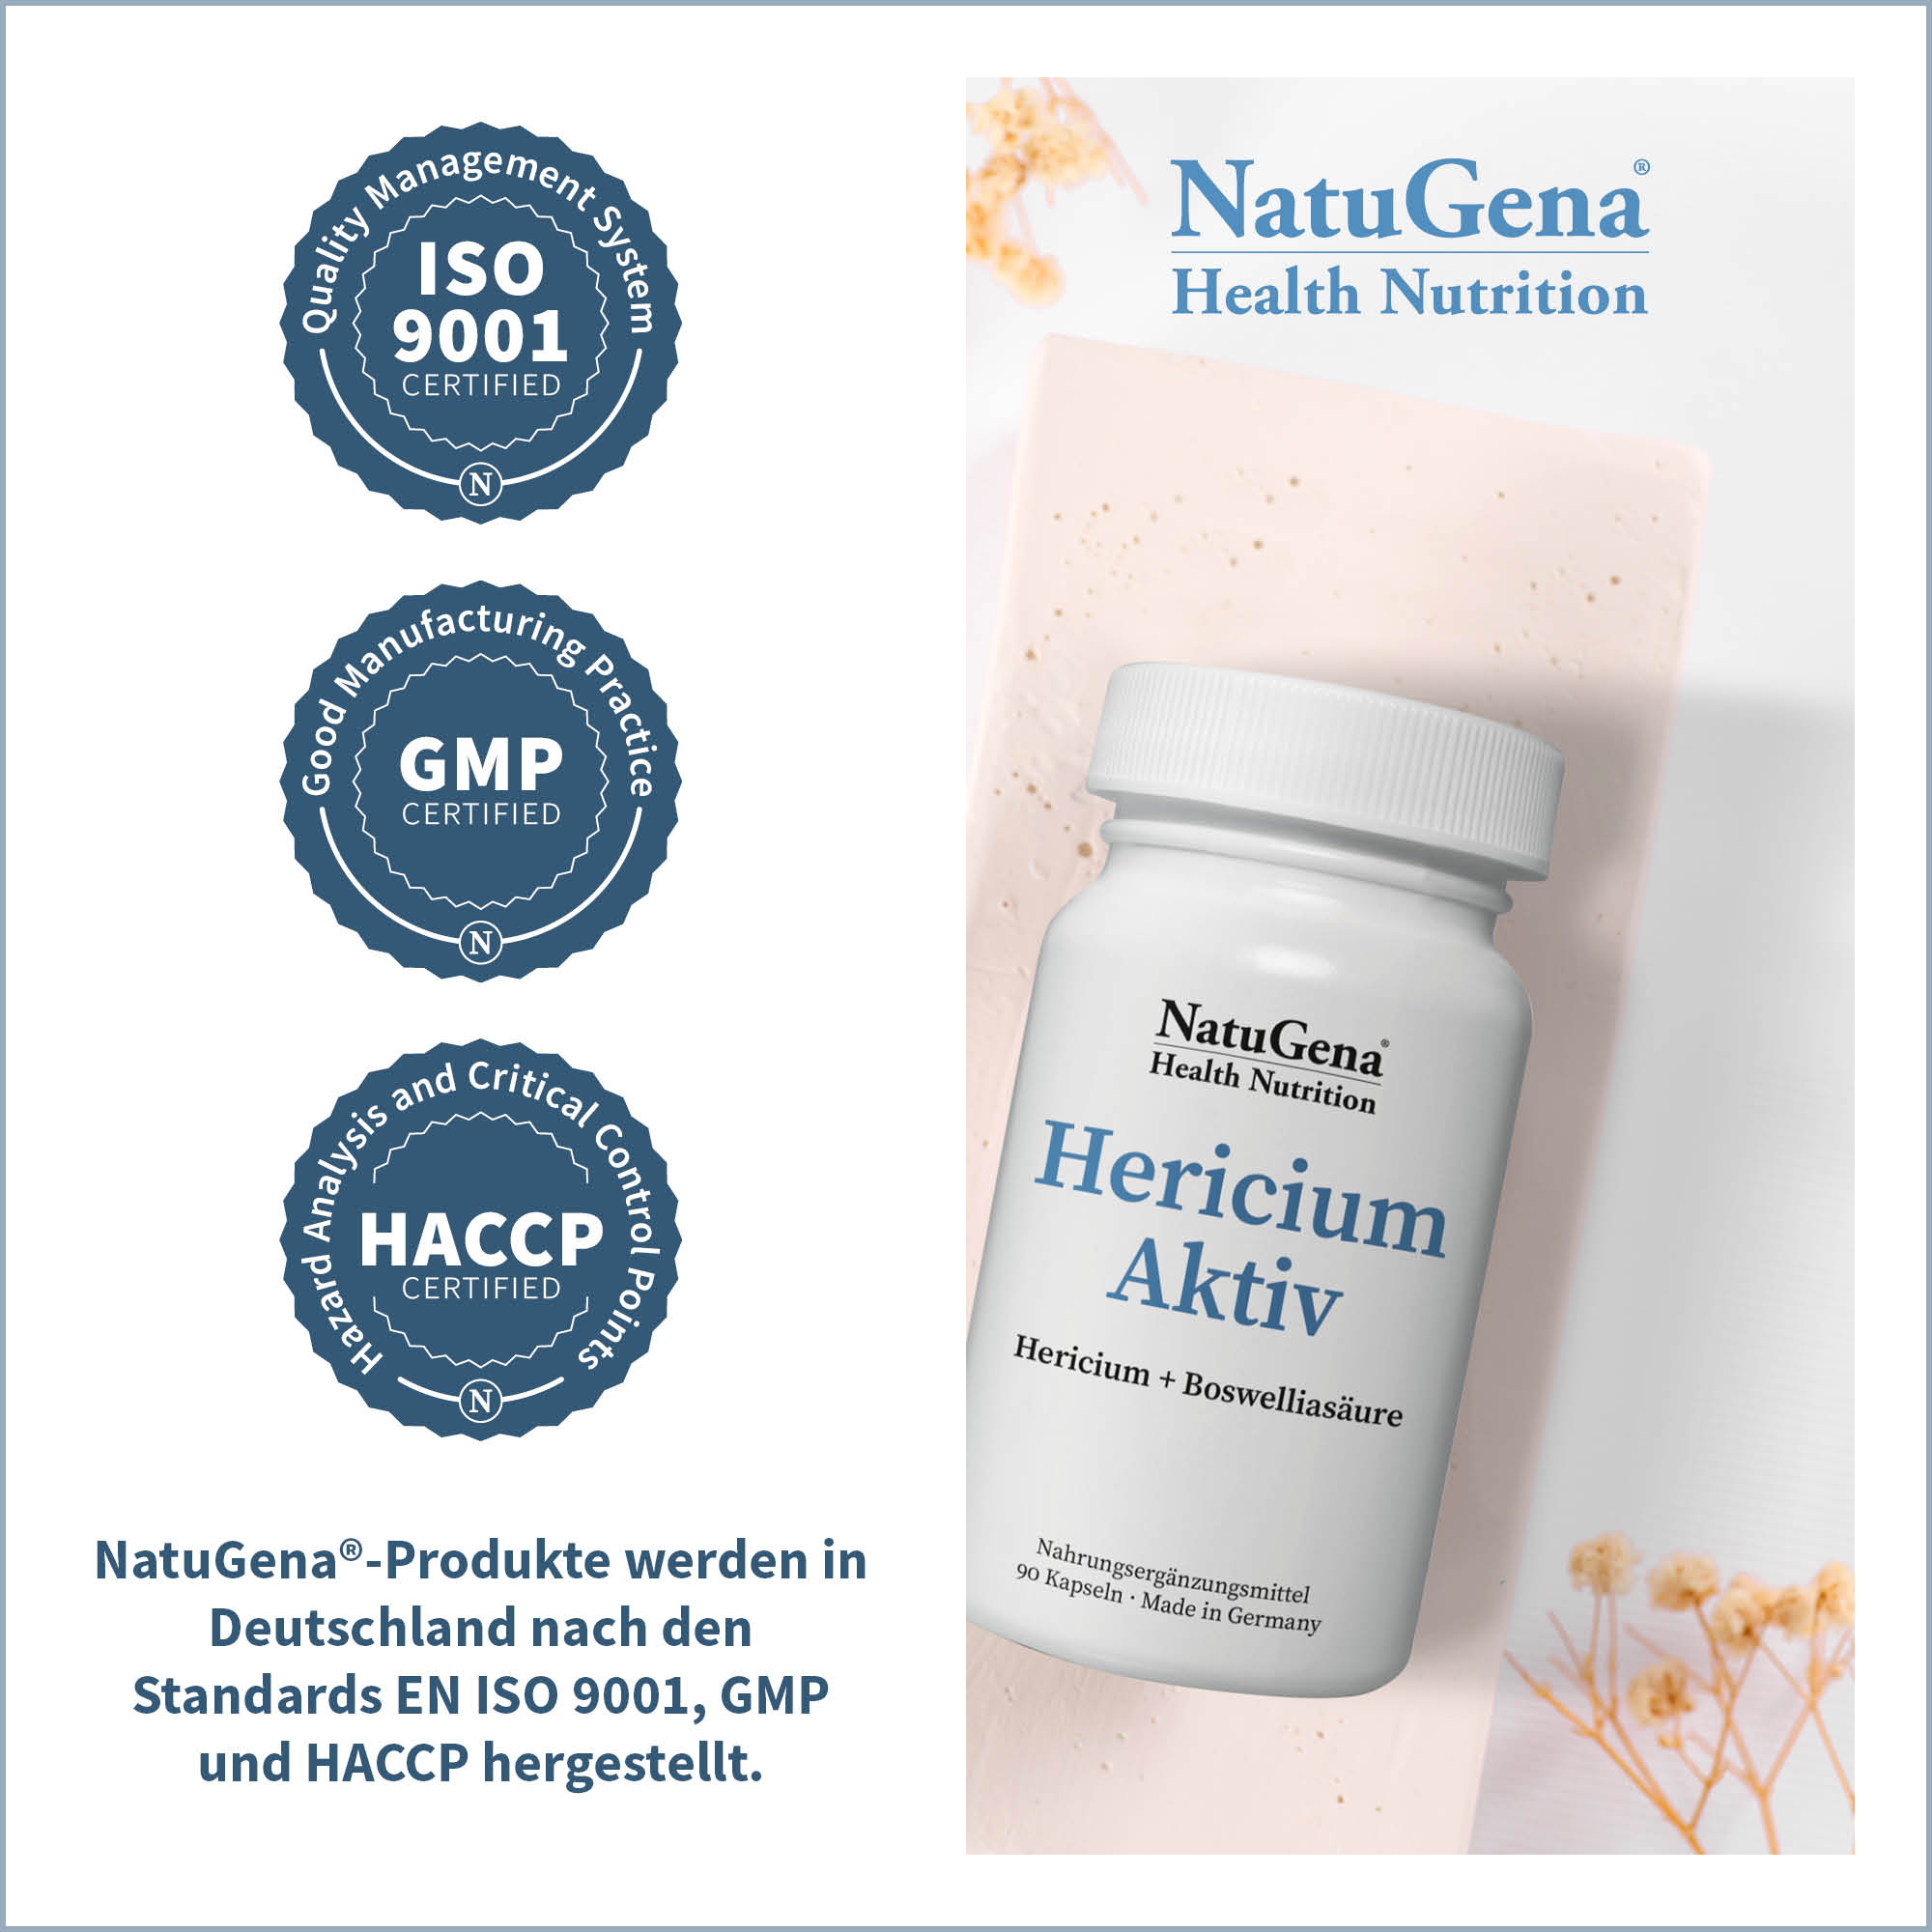 HericiumAktiv von NatuGena - Zertifizierungen